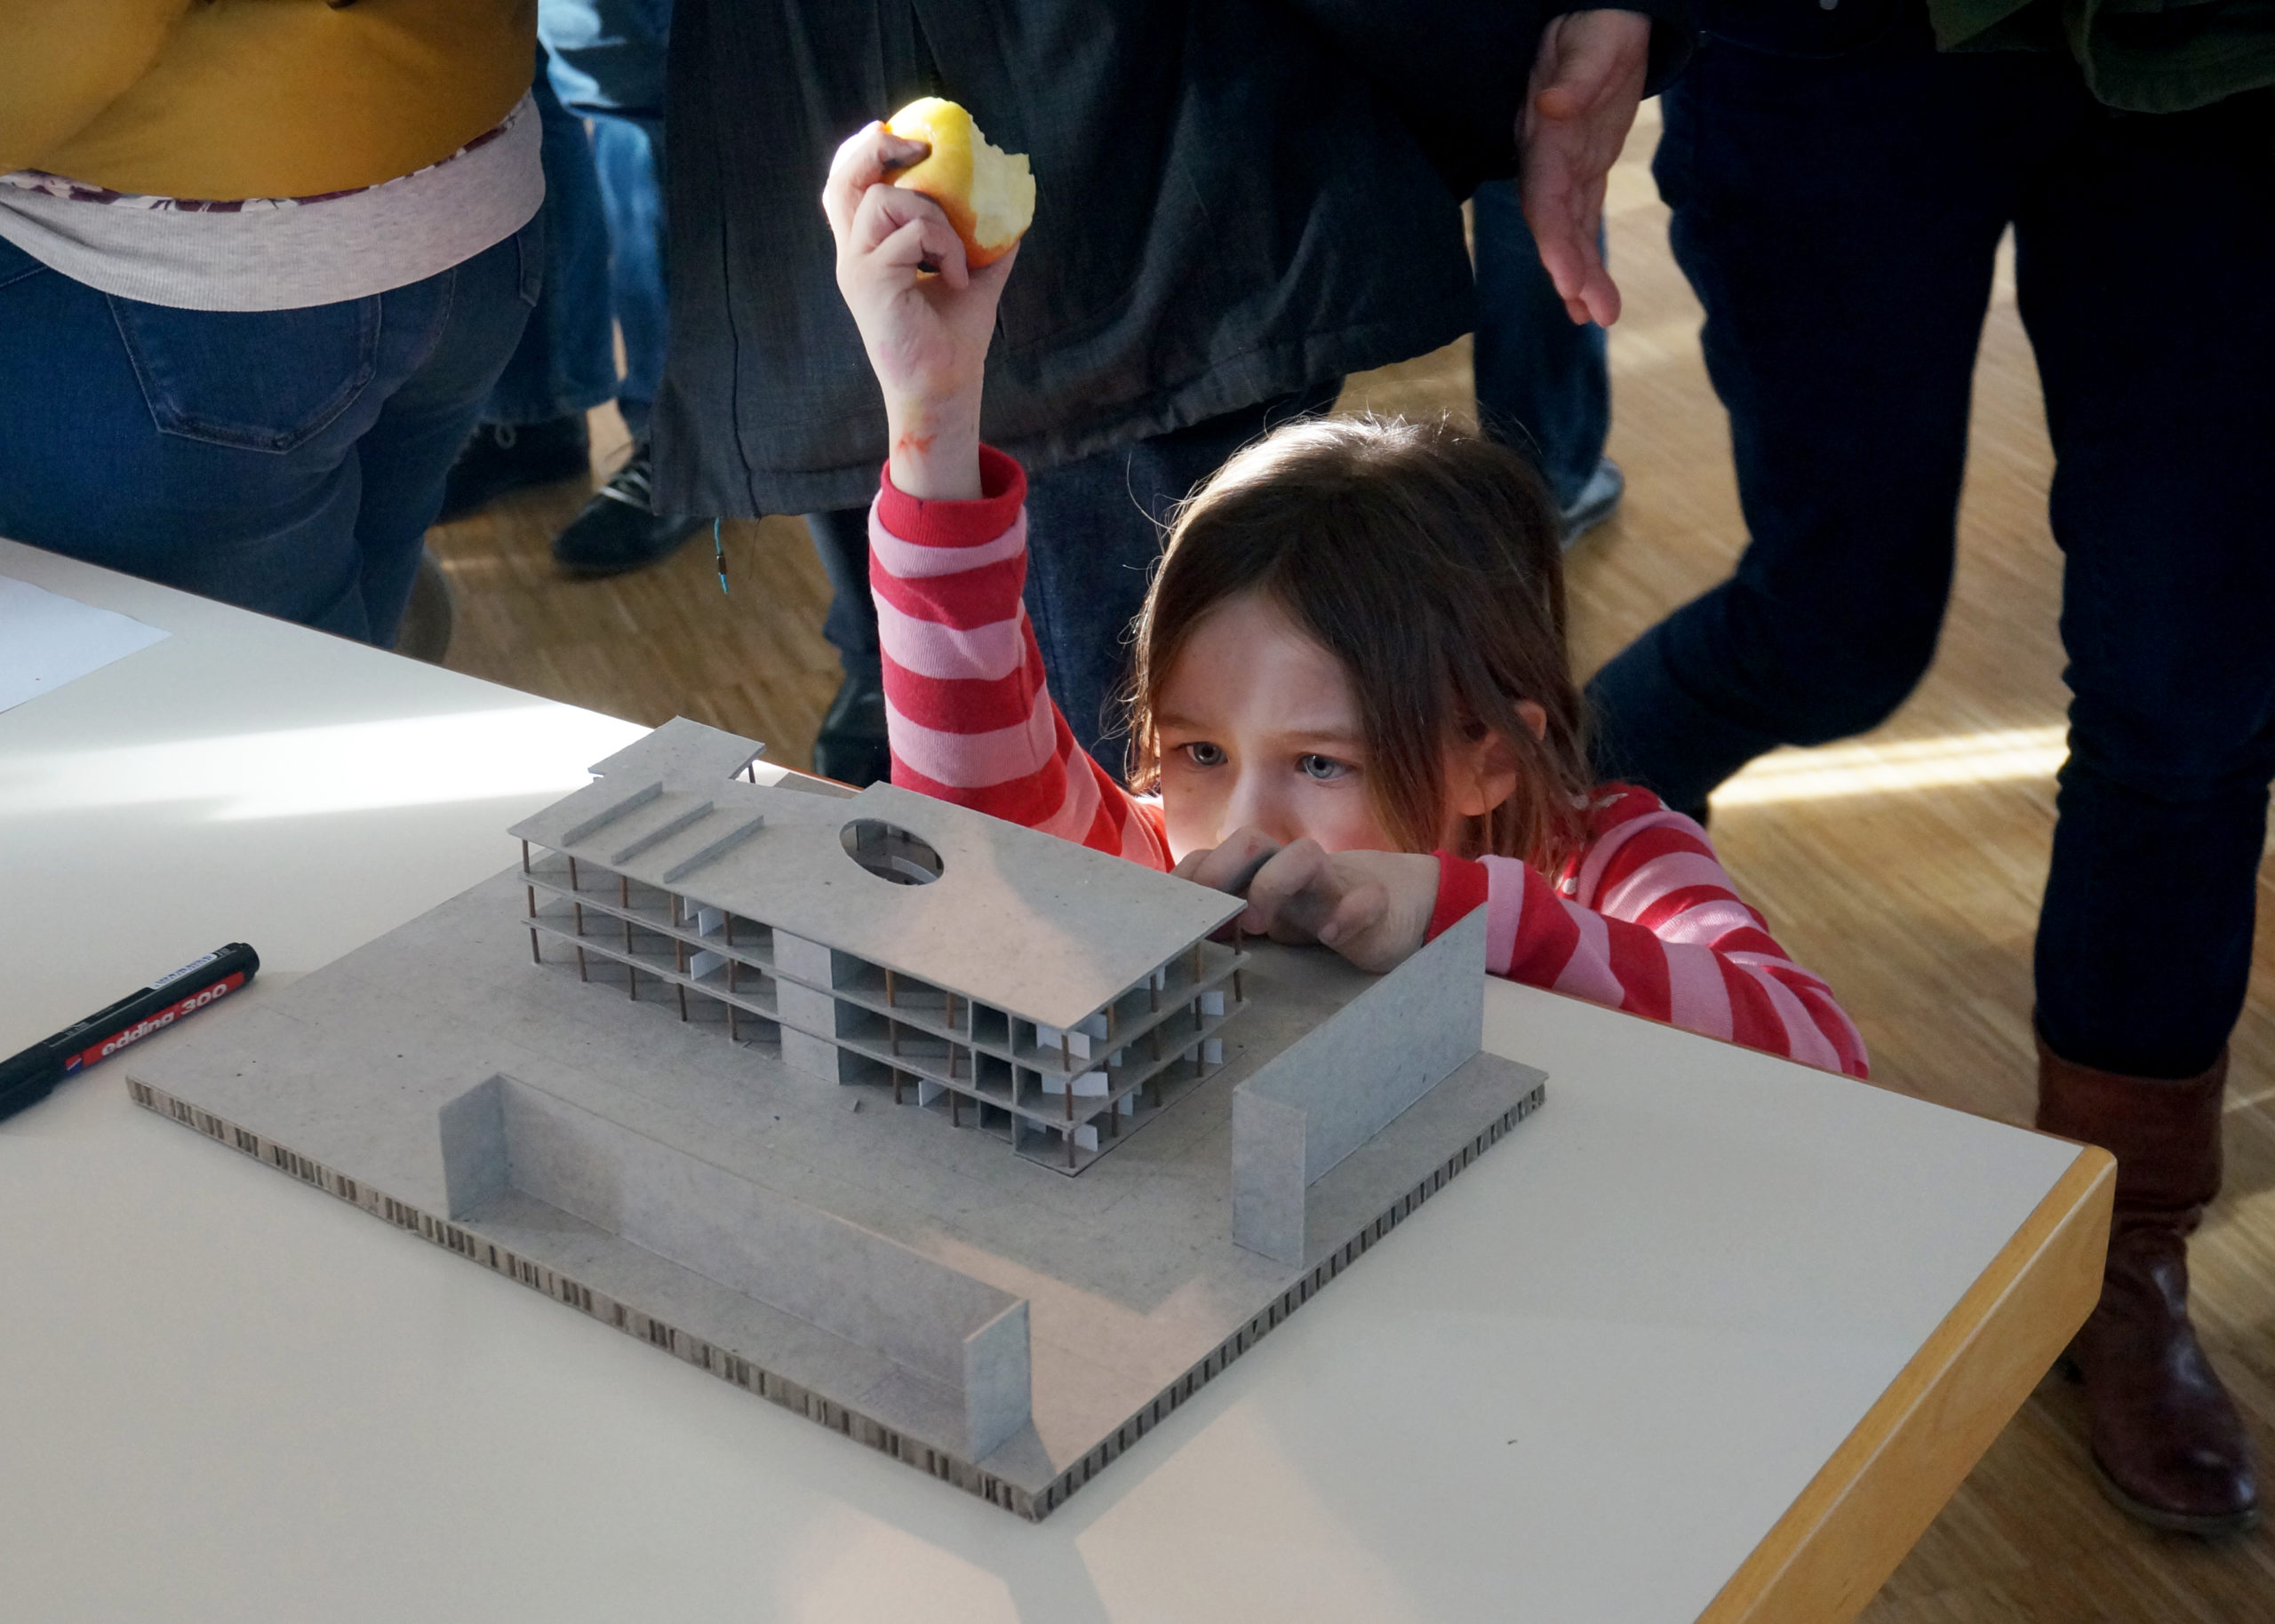 Junge Besucherin steht auf Augenhöhe mit Architekturmodell und betrachtet es. Dabei hält sie einen angebissenen Apfel in die Luft.